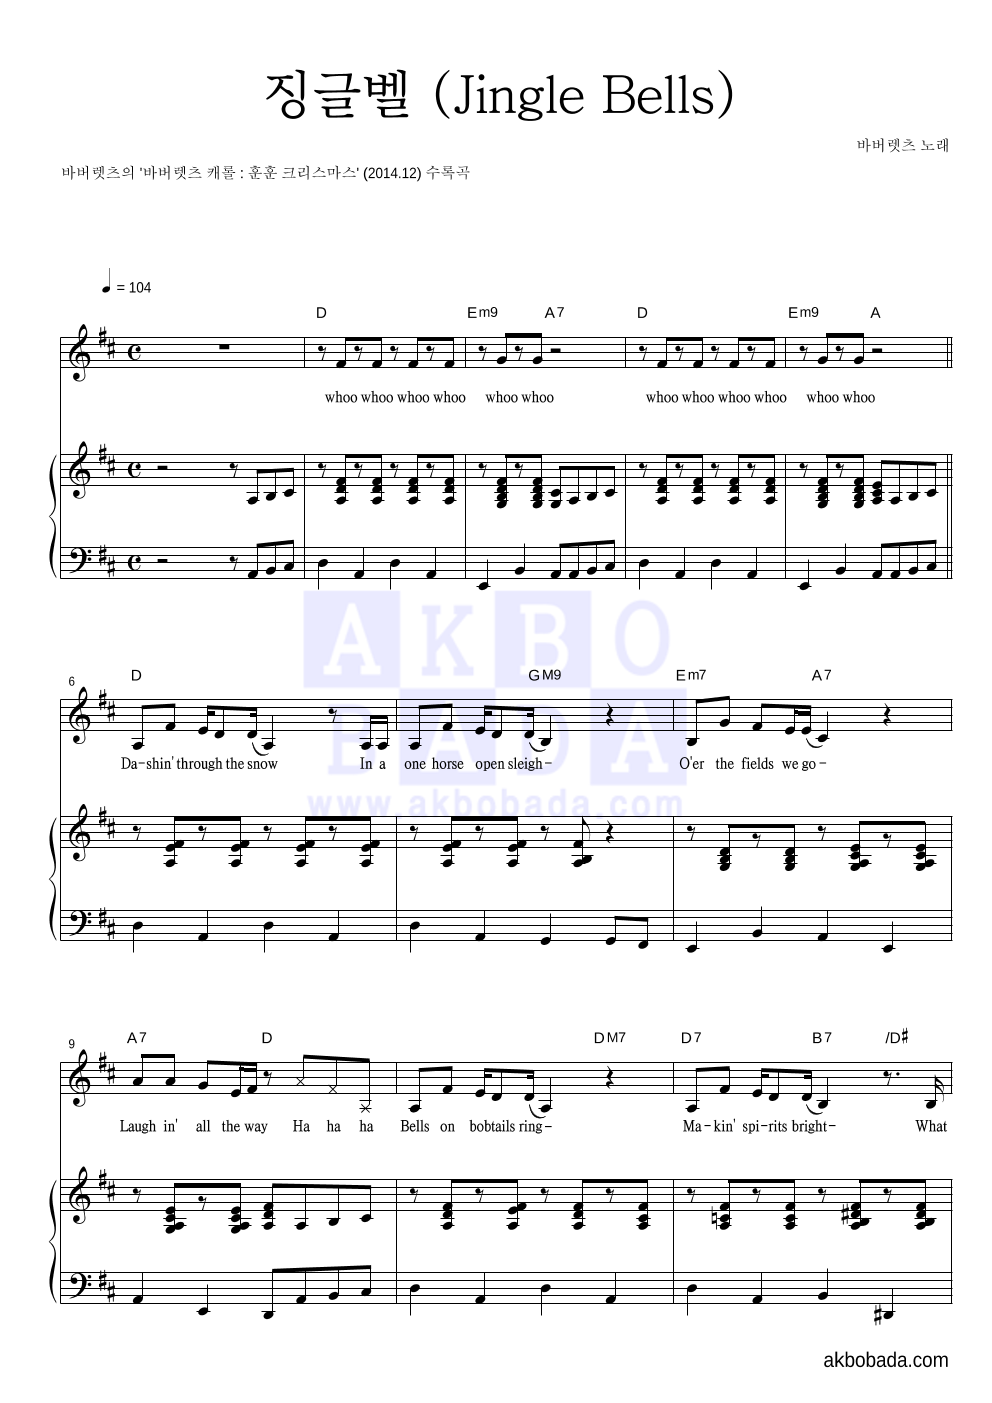 바버렛츠 - 징글벨 (Jingle Bells) 피아노 3단 악보 